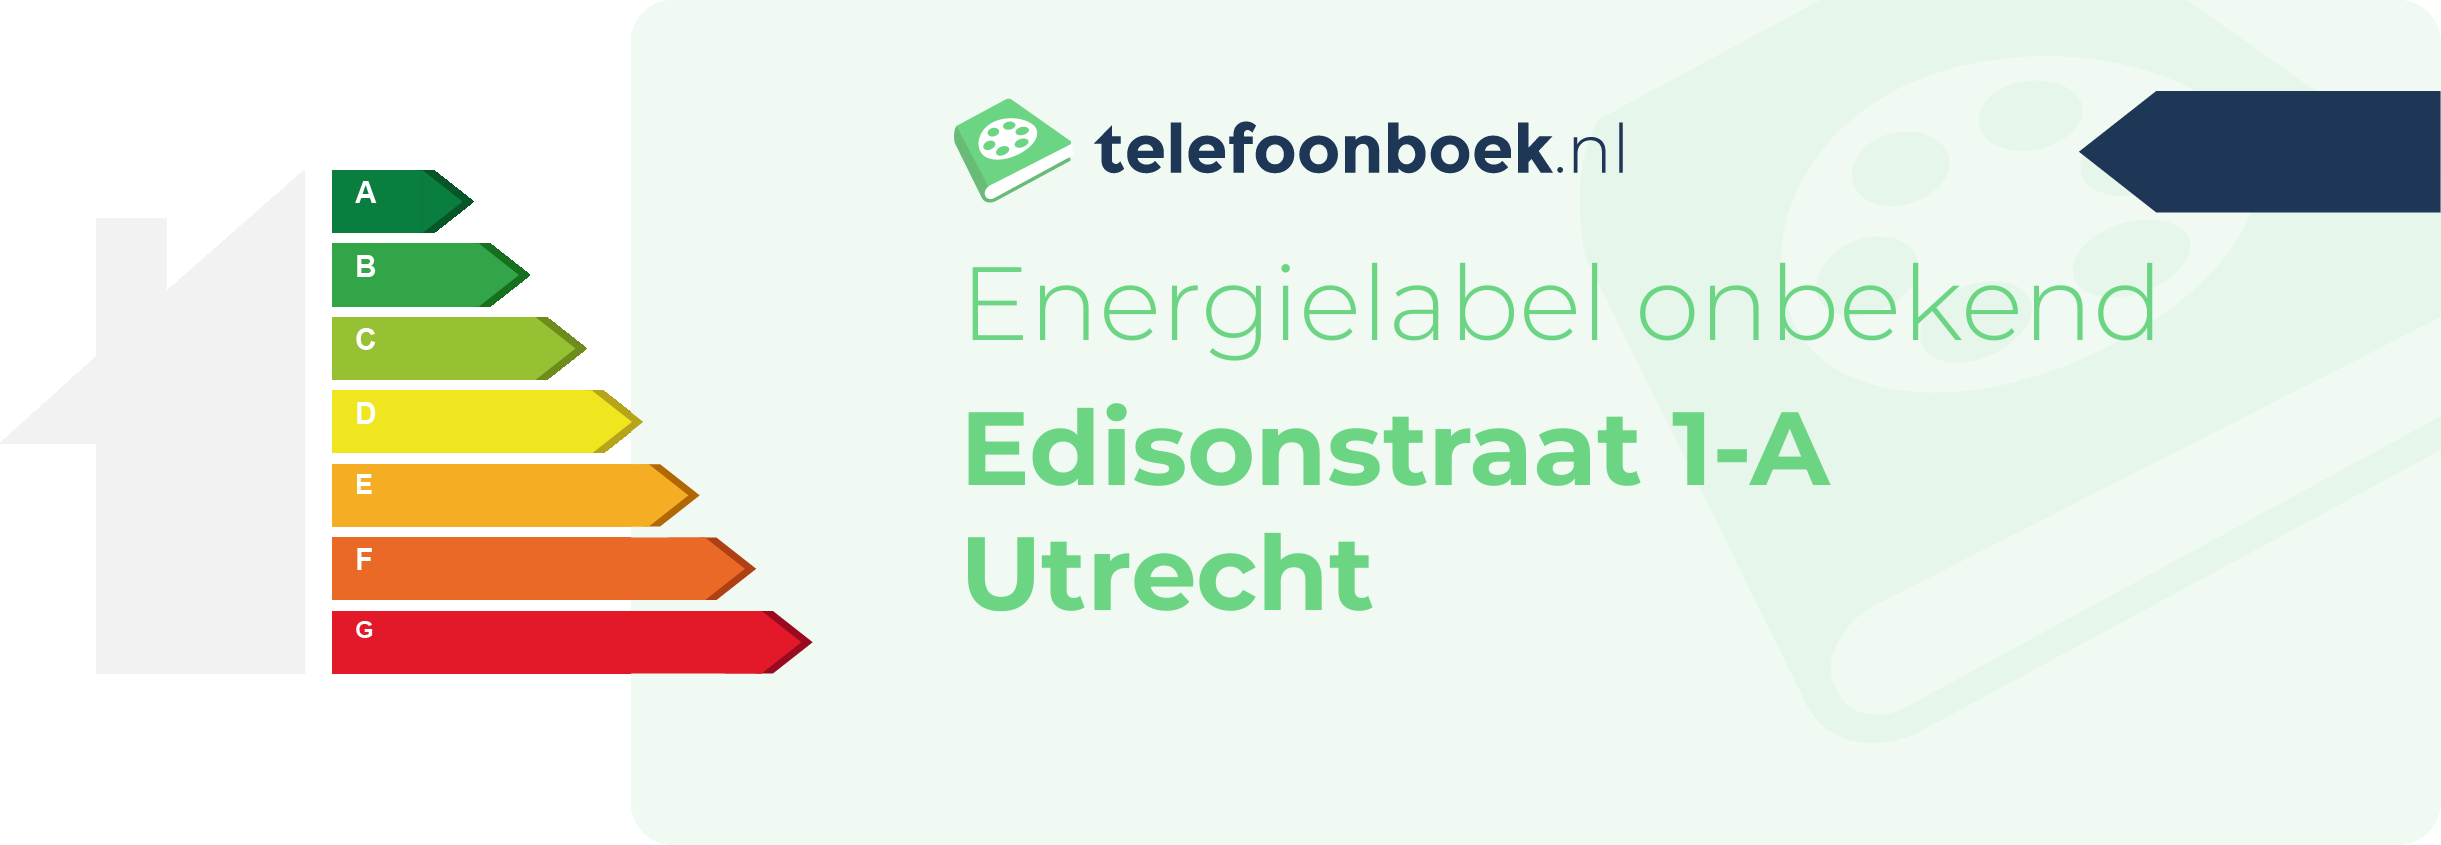 Energielabel Edisonstraat 1-A Utrecht